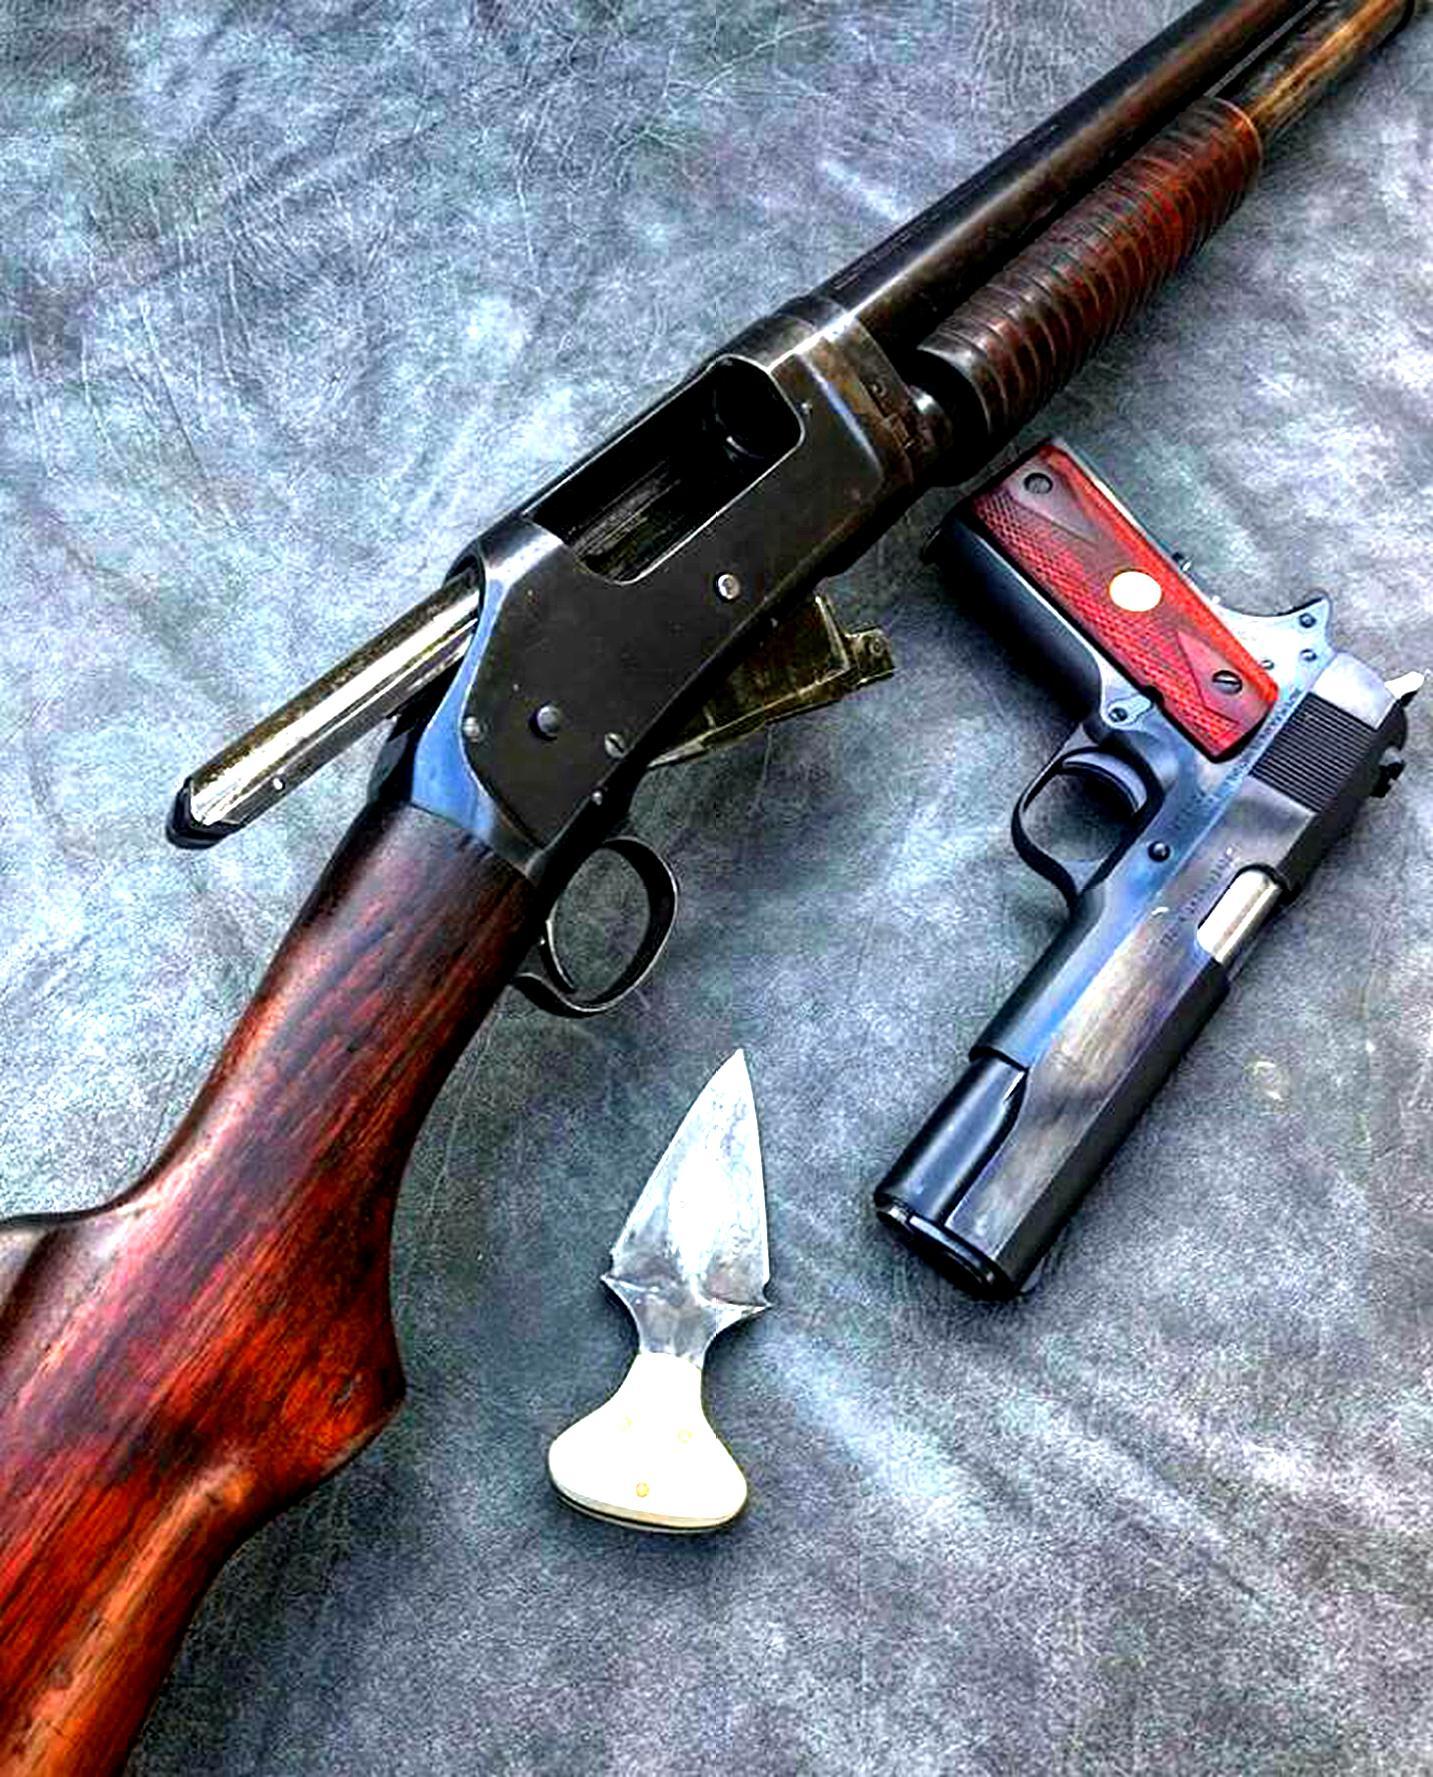 纳甘左轮手枪,是比利时人利昂·纳甘(léon nagant)为沙皇俄国研发的